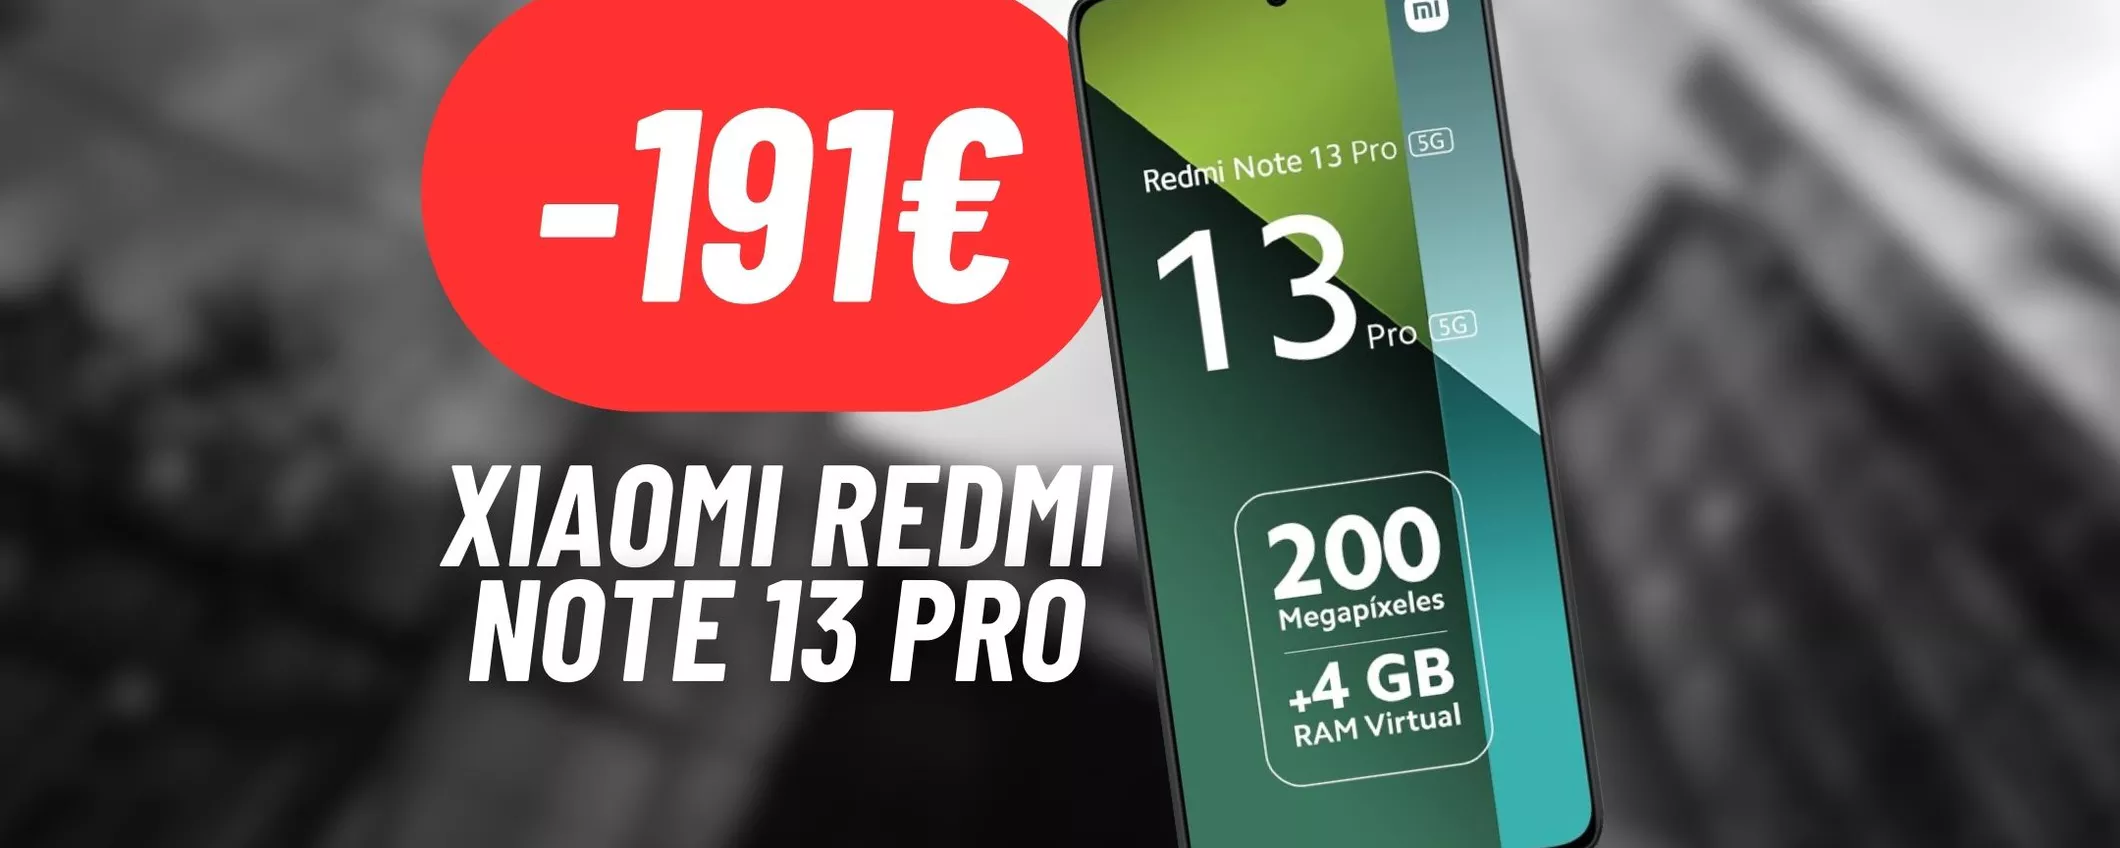 DOPPIA PROMOZIONE sullo Xiaomi Redmi Note 13 Pro su eBay: SCONTO TOTALE DI 191€